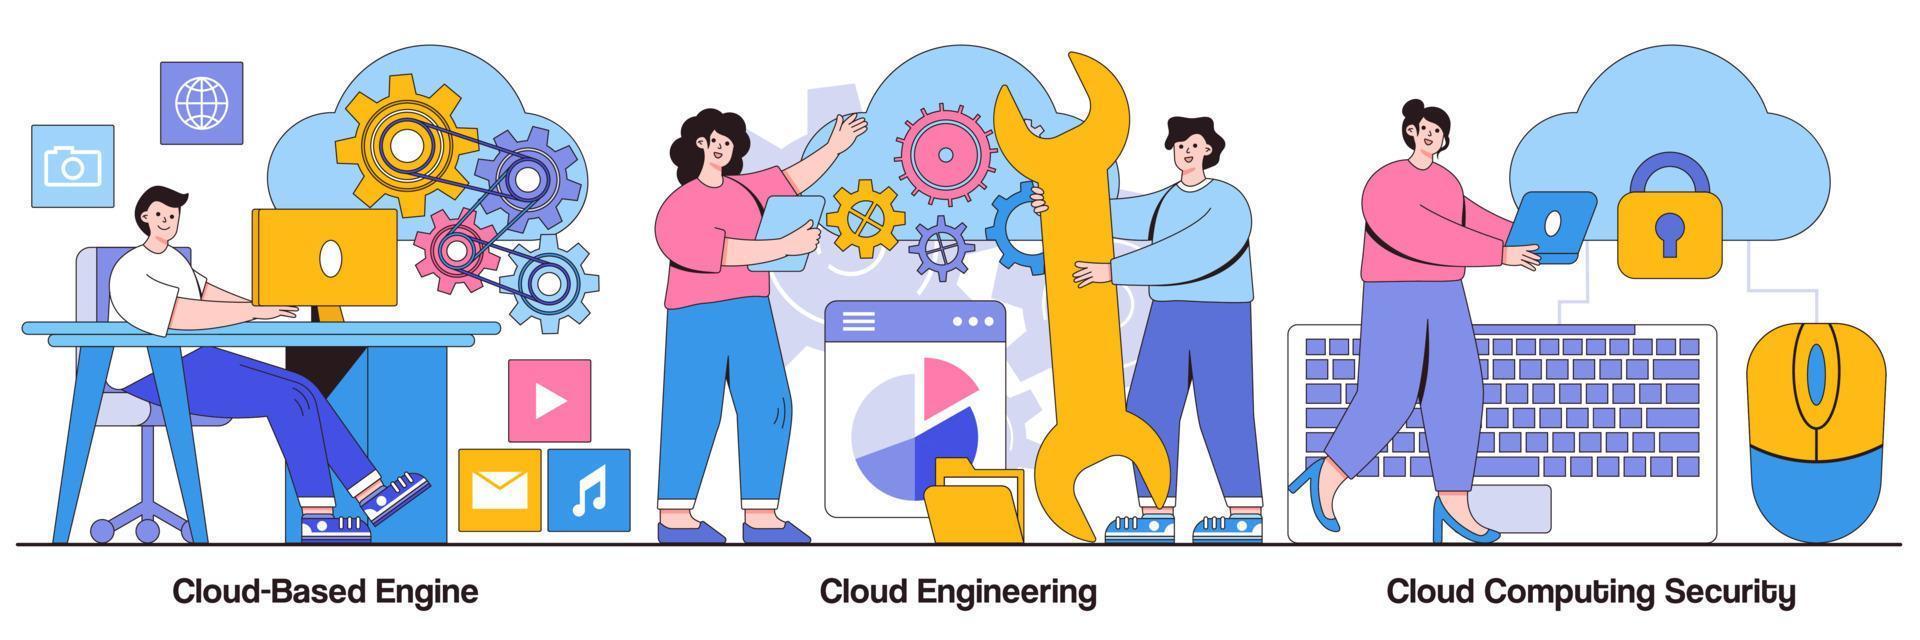 illustriertes Paket für Cloud-basierte Engine, Cloud-Engineering und Computersicherheit vektor